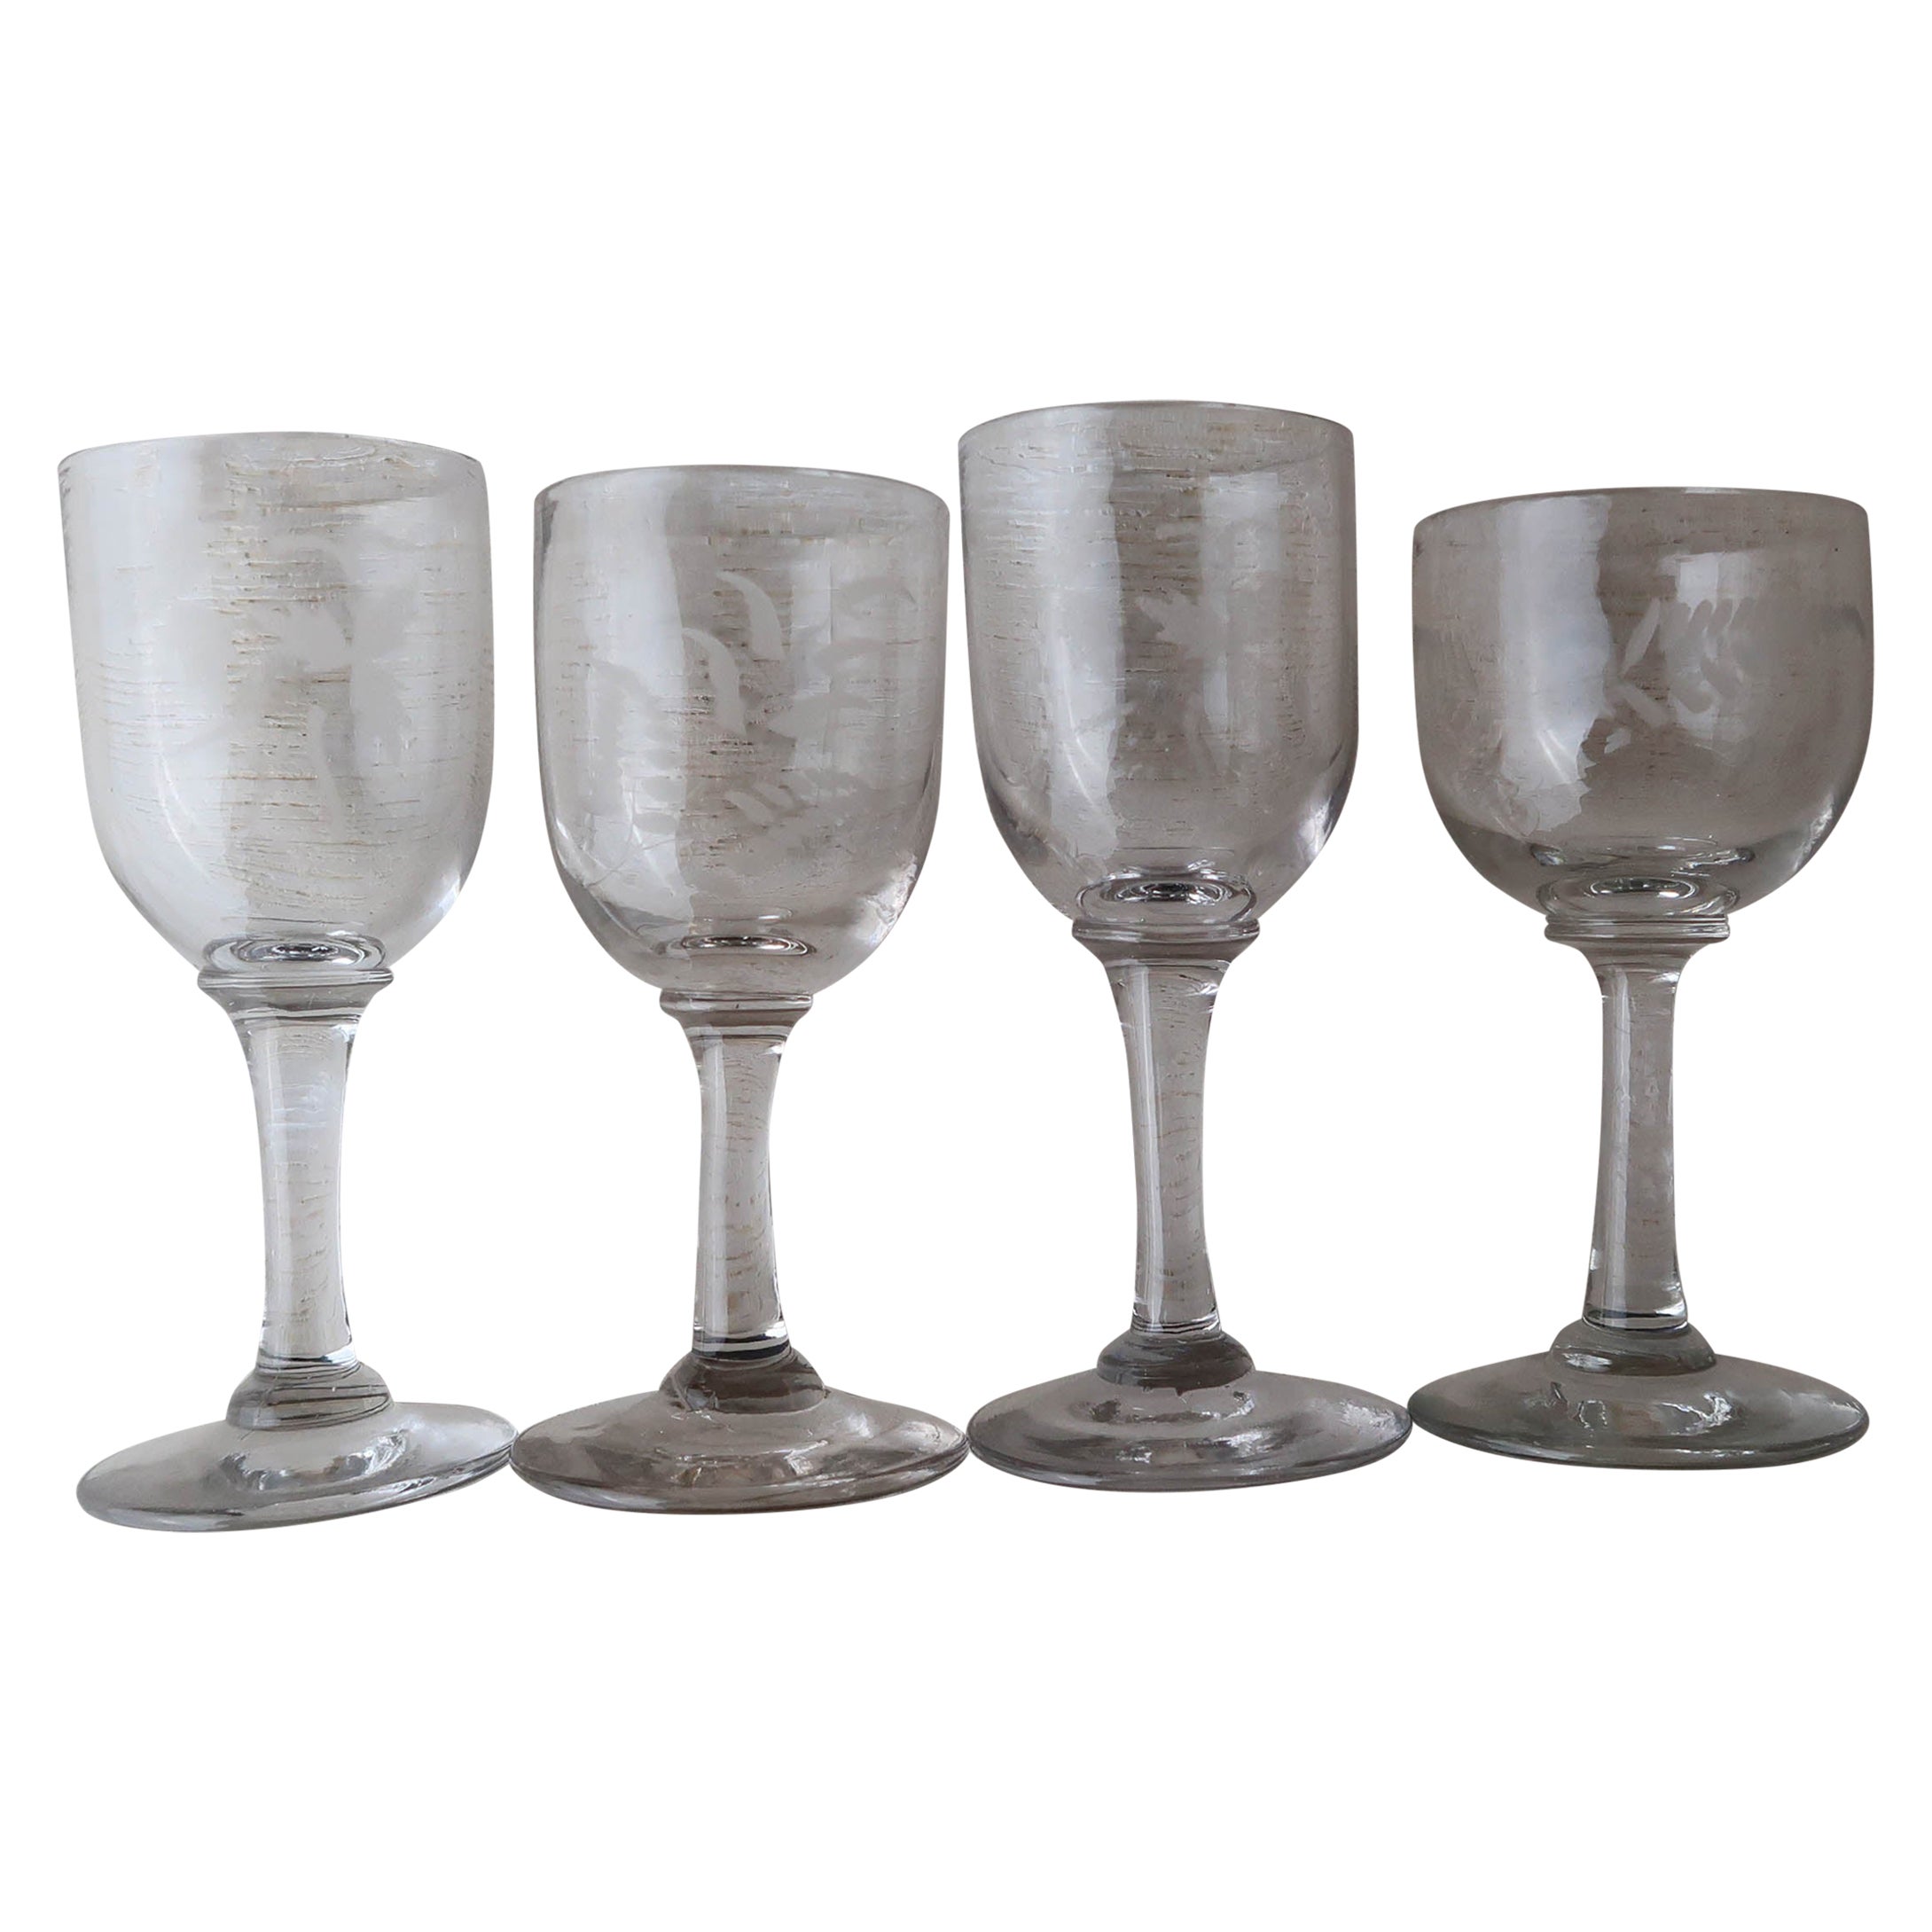 Kollektion von 4 kleinen englischen geätzten Gläsern aus dem 19. Jahrhundert